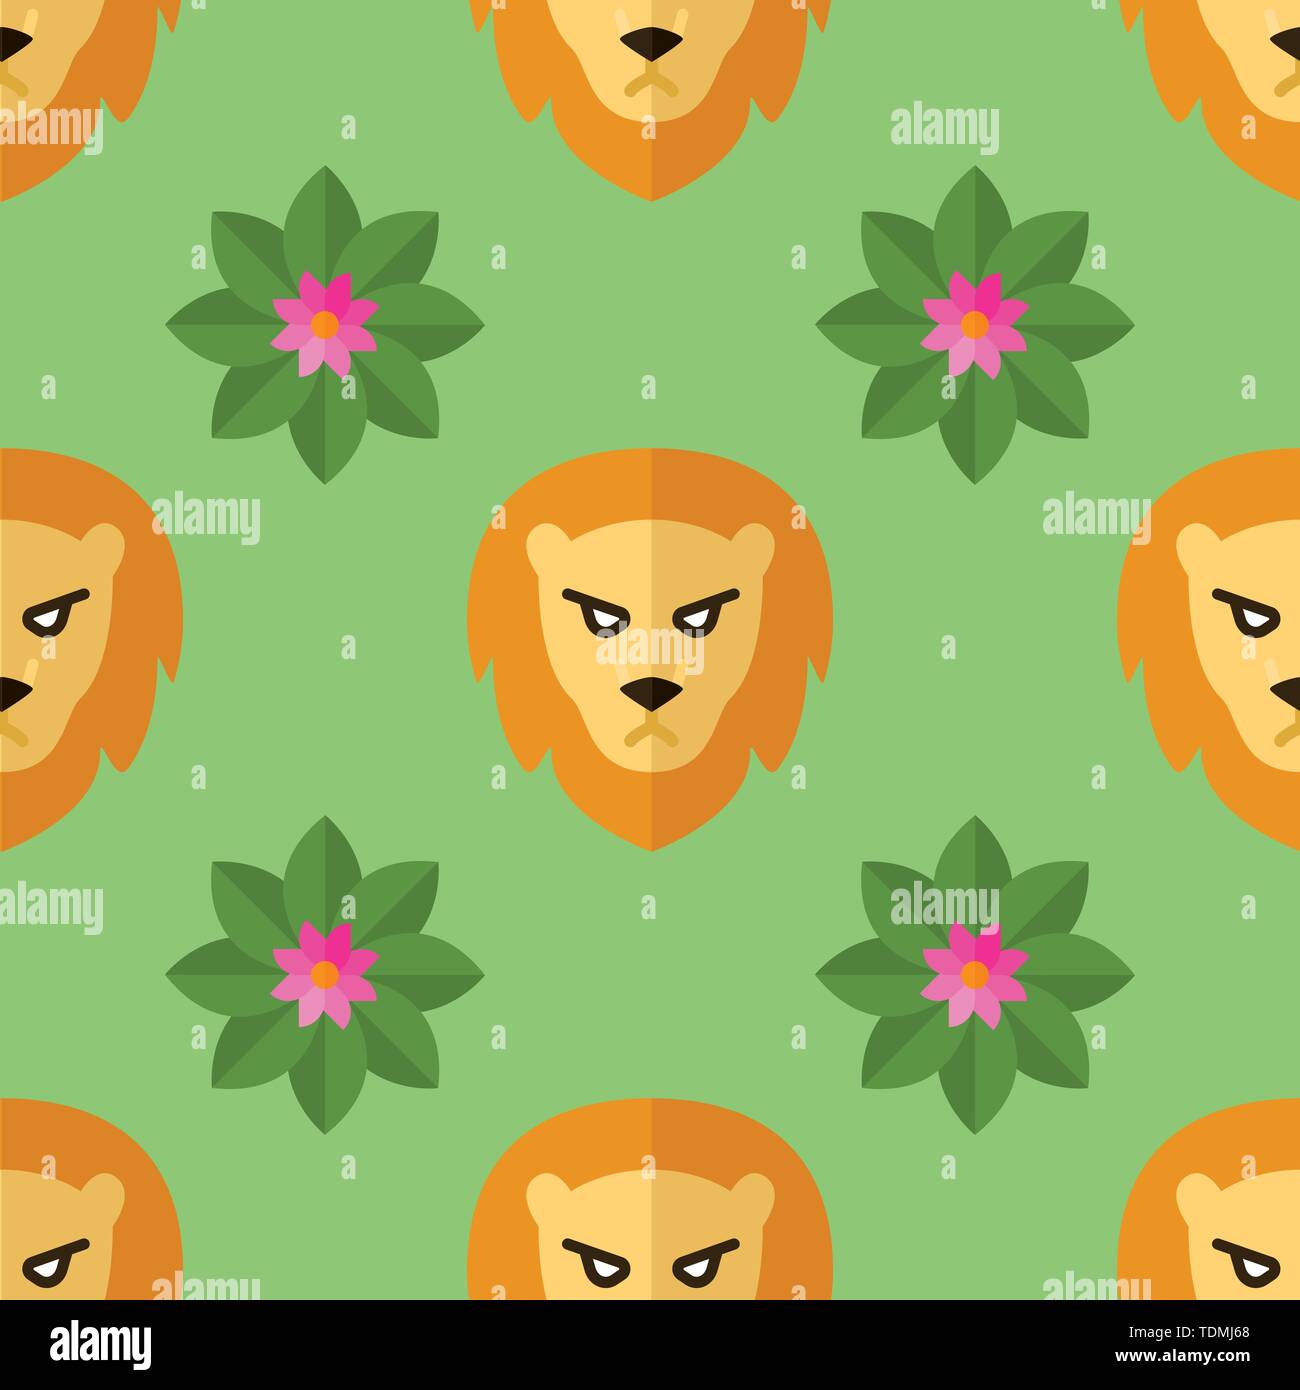 Nahtlose Muster für Textilien mit Löwen und Blumen auf einem hellen, grünen Hintergrund. Vector Illustration im flachen Stil Stock Vektor